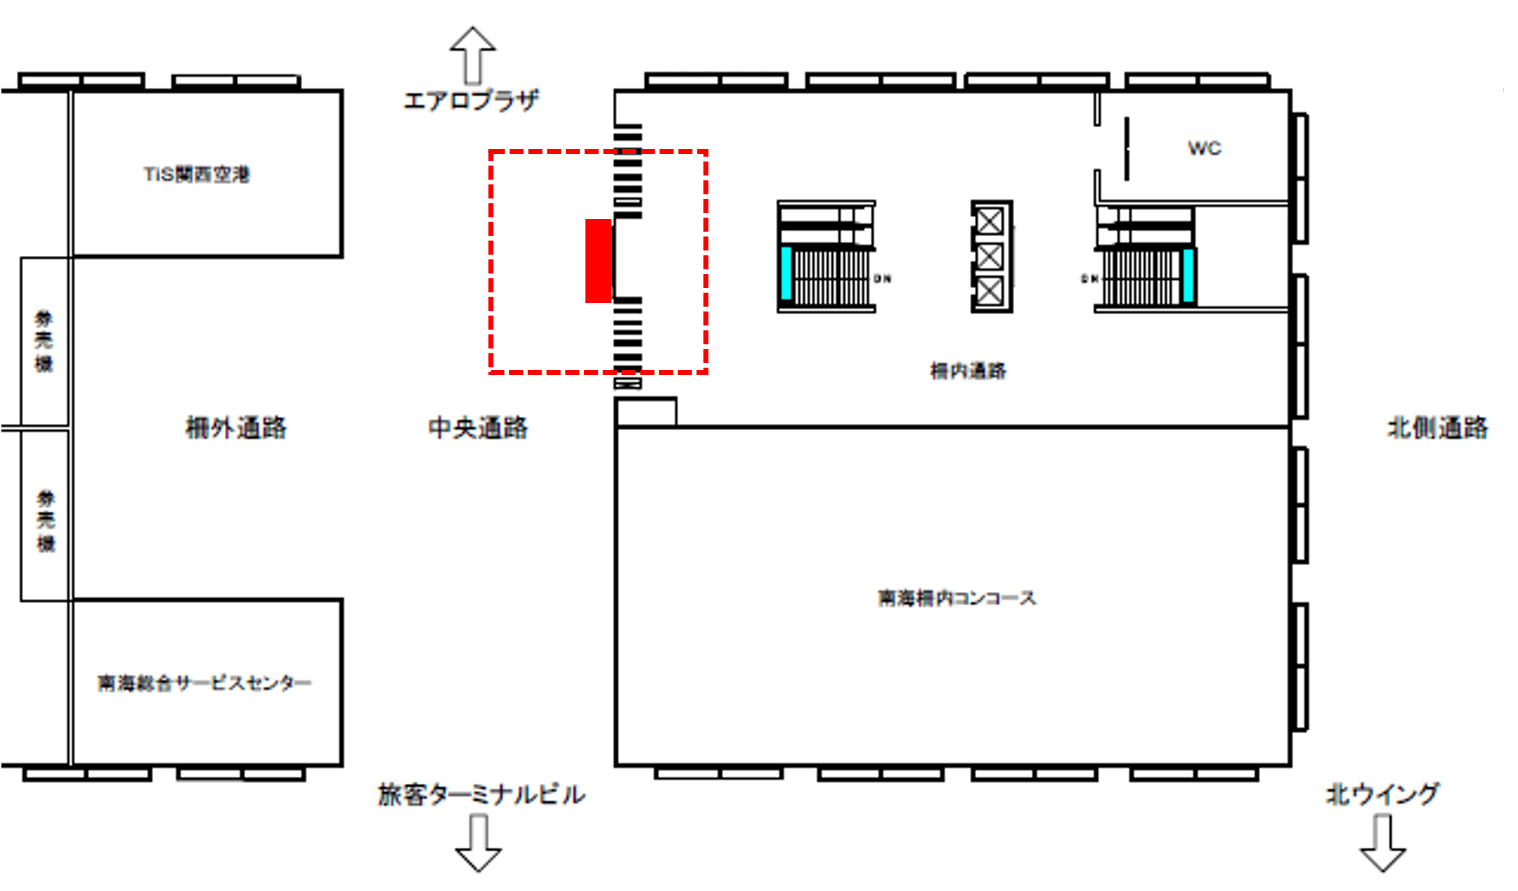 関西空港駅マルチビジョン配置図